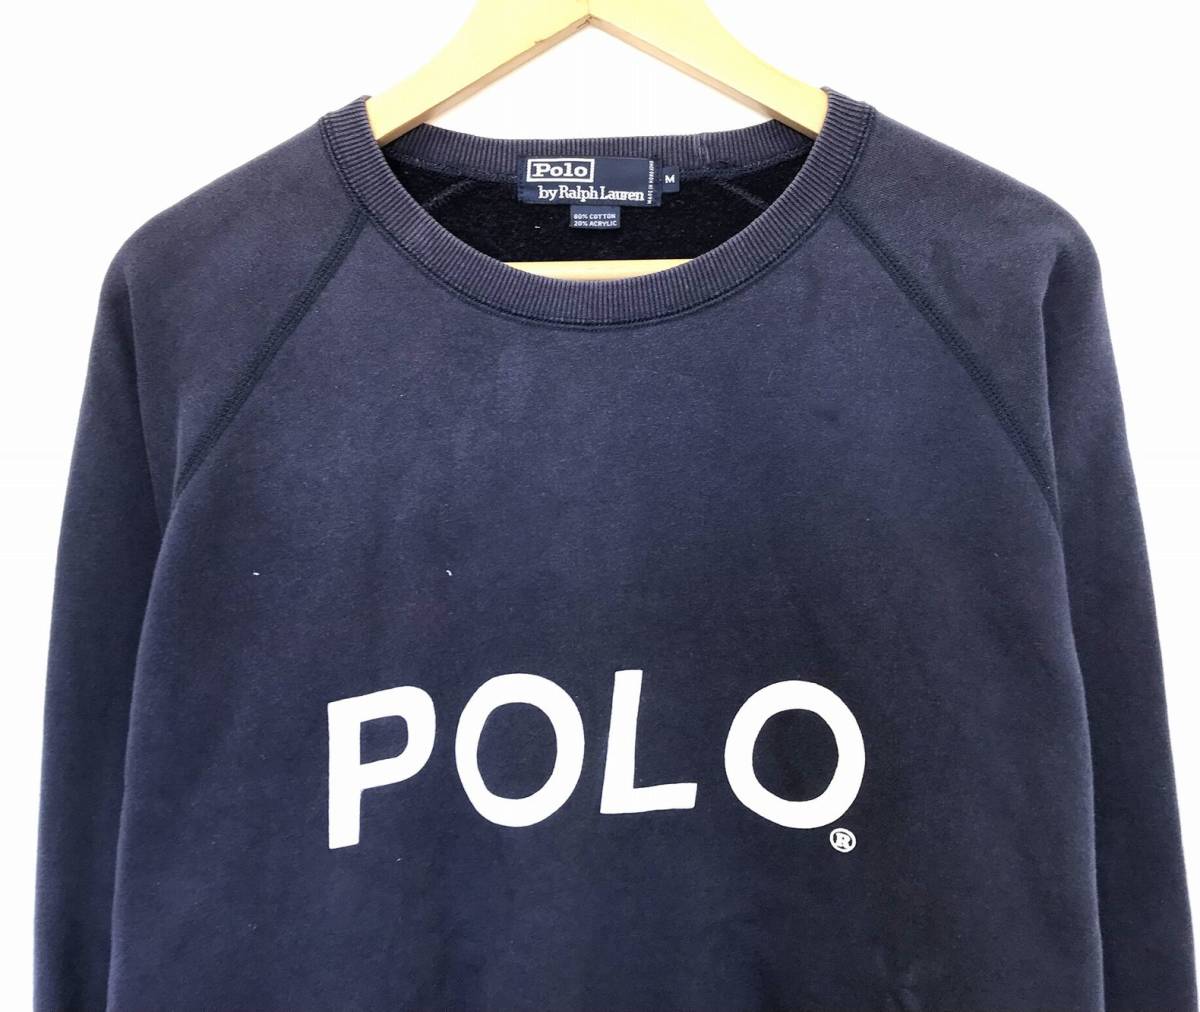 009 Polo Ralph Lauren Polo Ralph Lauren sweat POLO Logo sweatshirt pull over tops M navy 